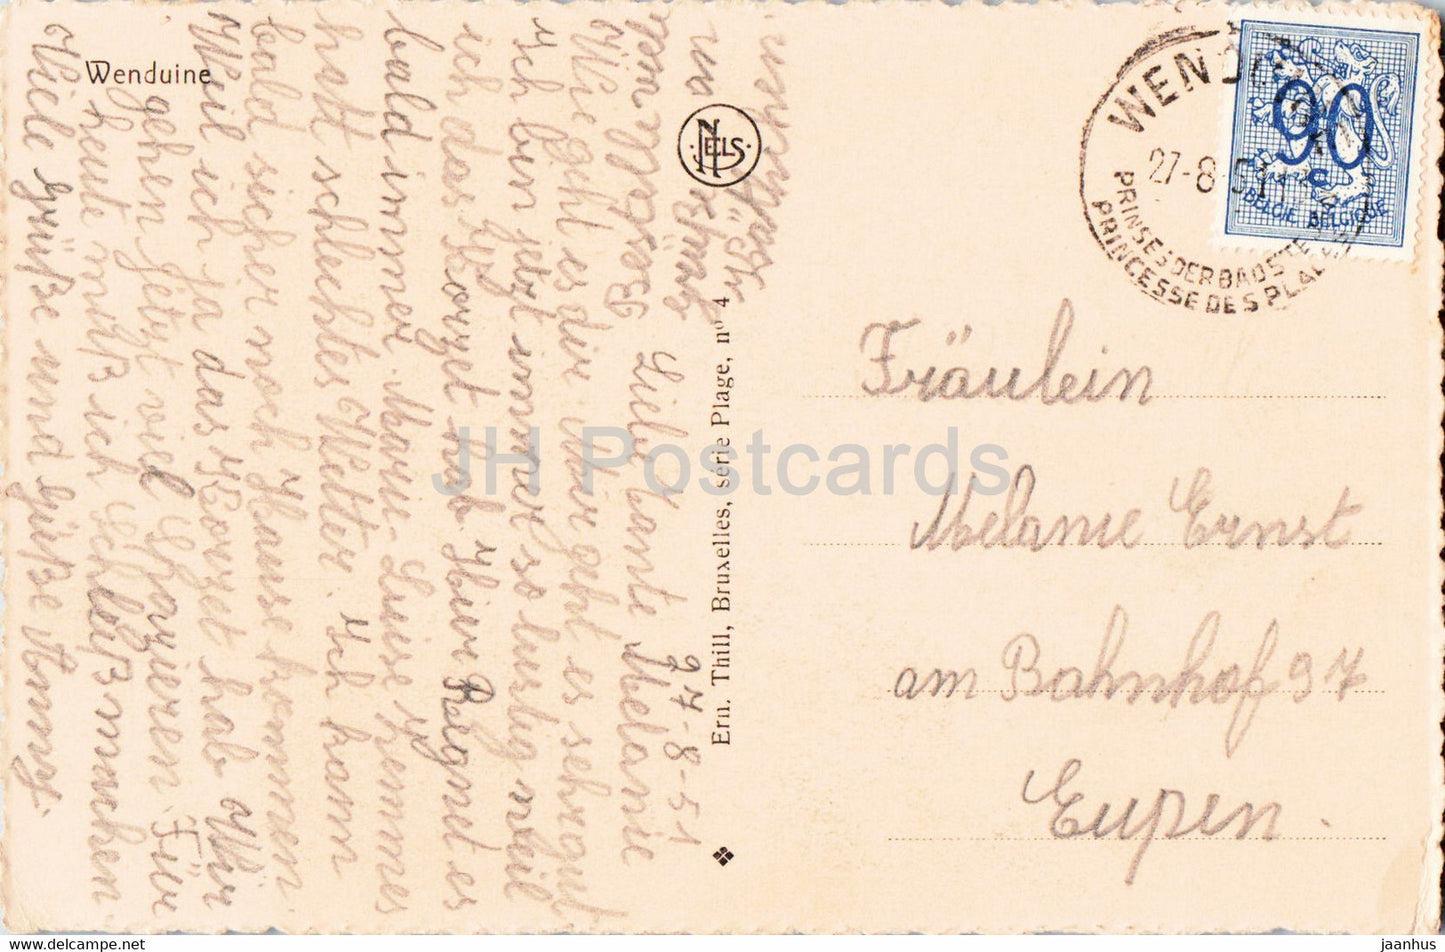 Wenduine - Coucher de soleil - Zonsondergang - Segelschiff - alte Postkarte - 1951 - Belgien - gebraucht